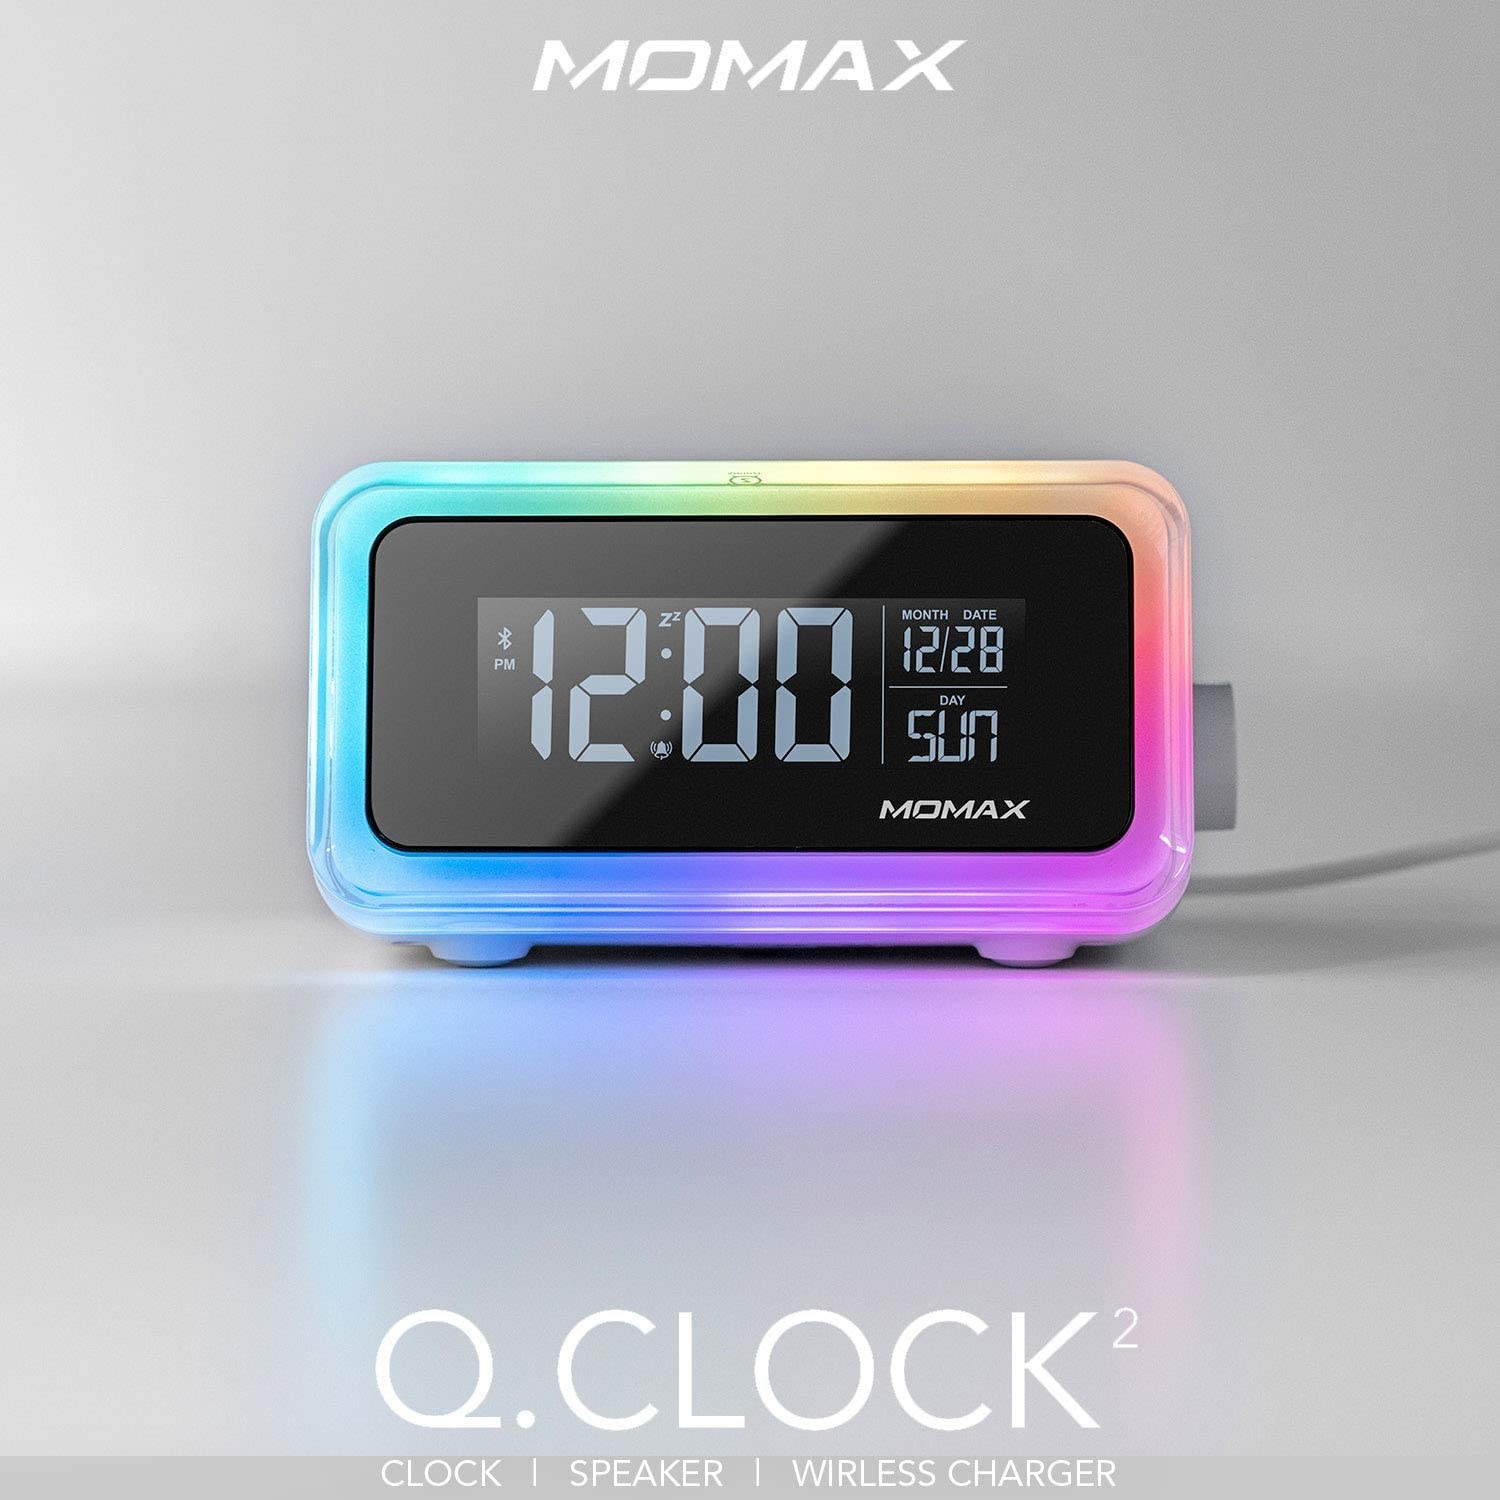 ساعة رقمية مع شاحن لاسلكي Q.CLOCK 2 MOMAX - أبيض - 4}